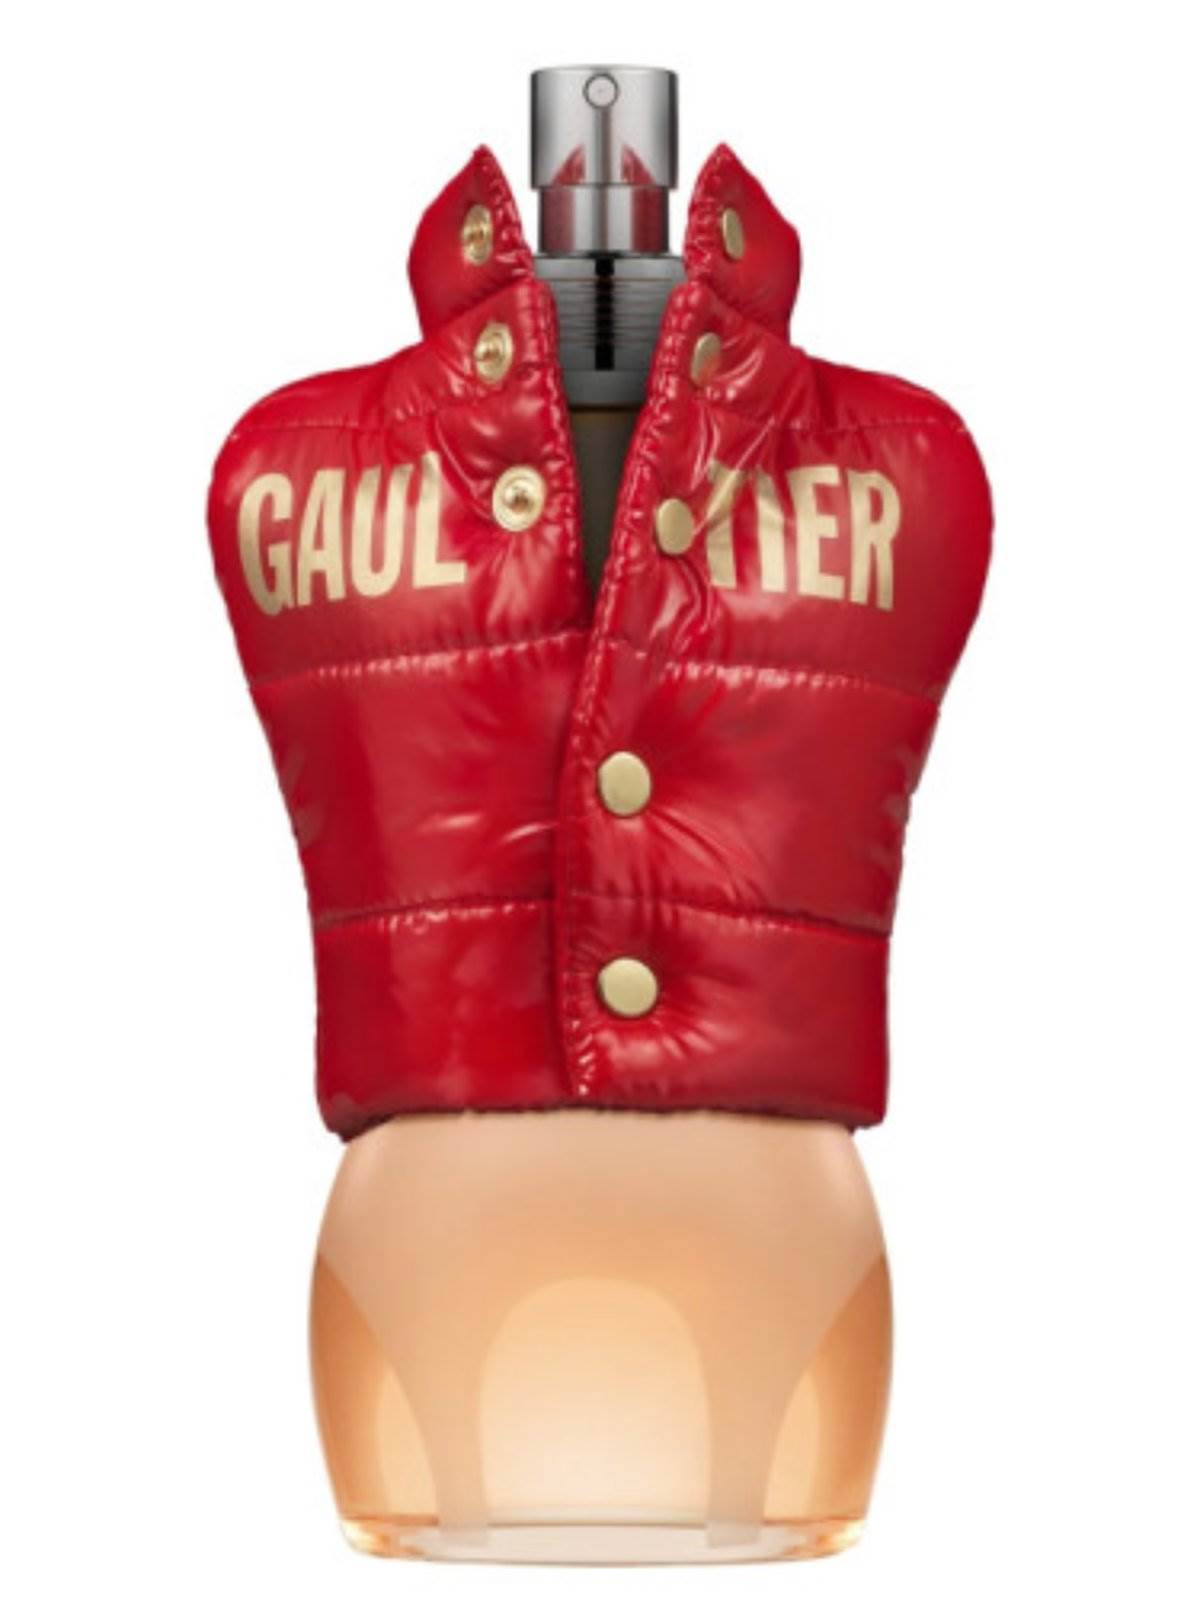  Jean Paul Gaultier parfem je idealan za zimu. 